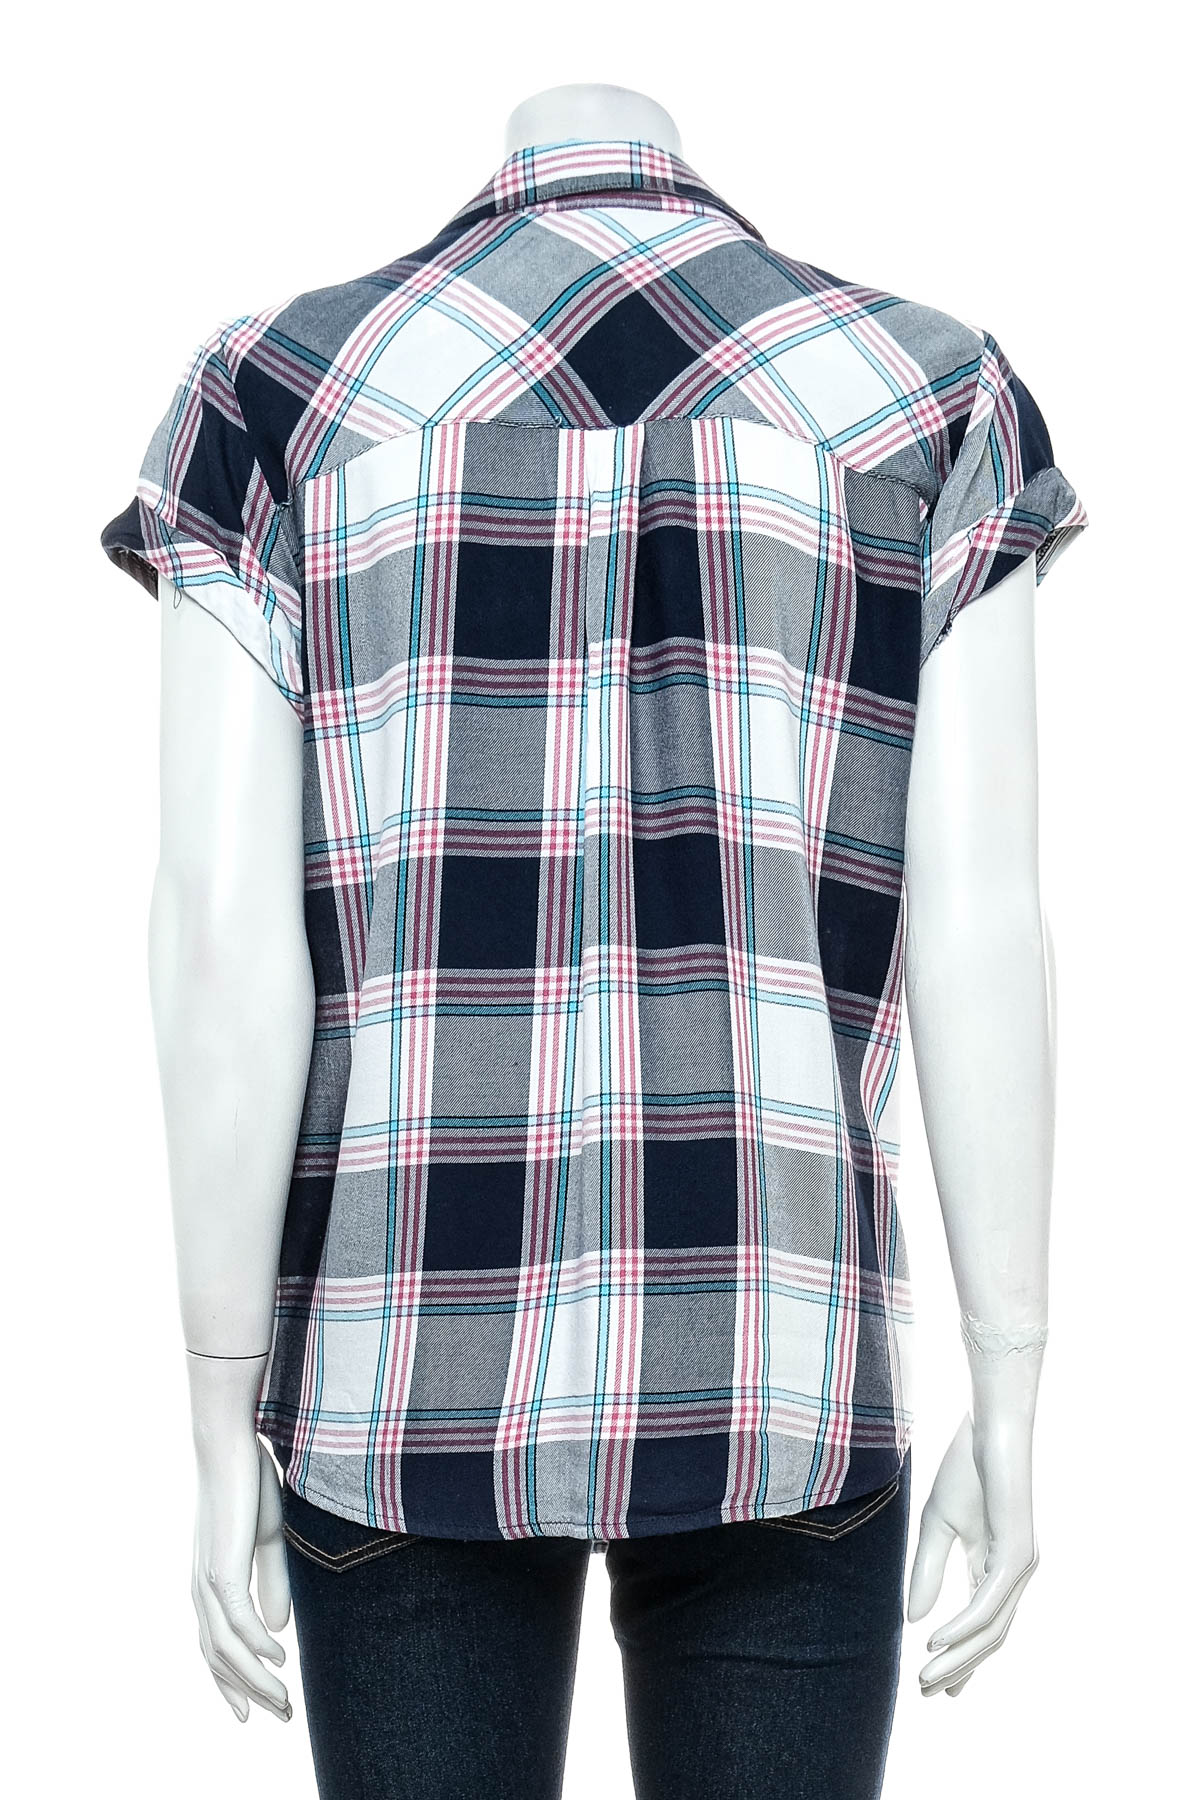 Γυναικείо πουκάμισο - Multiblu - 1